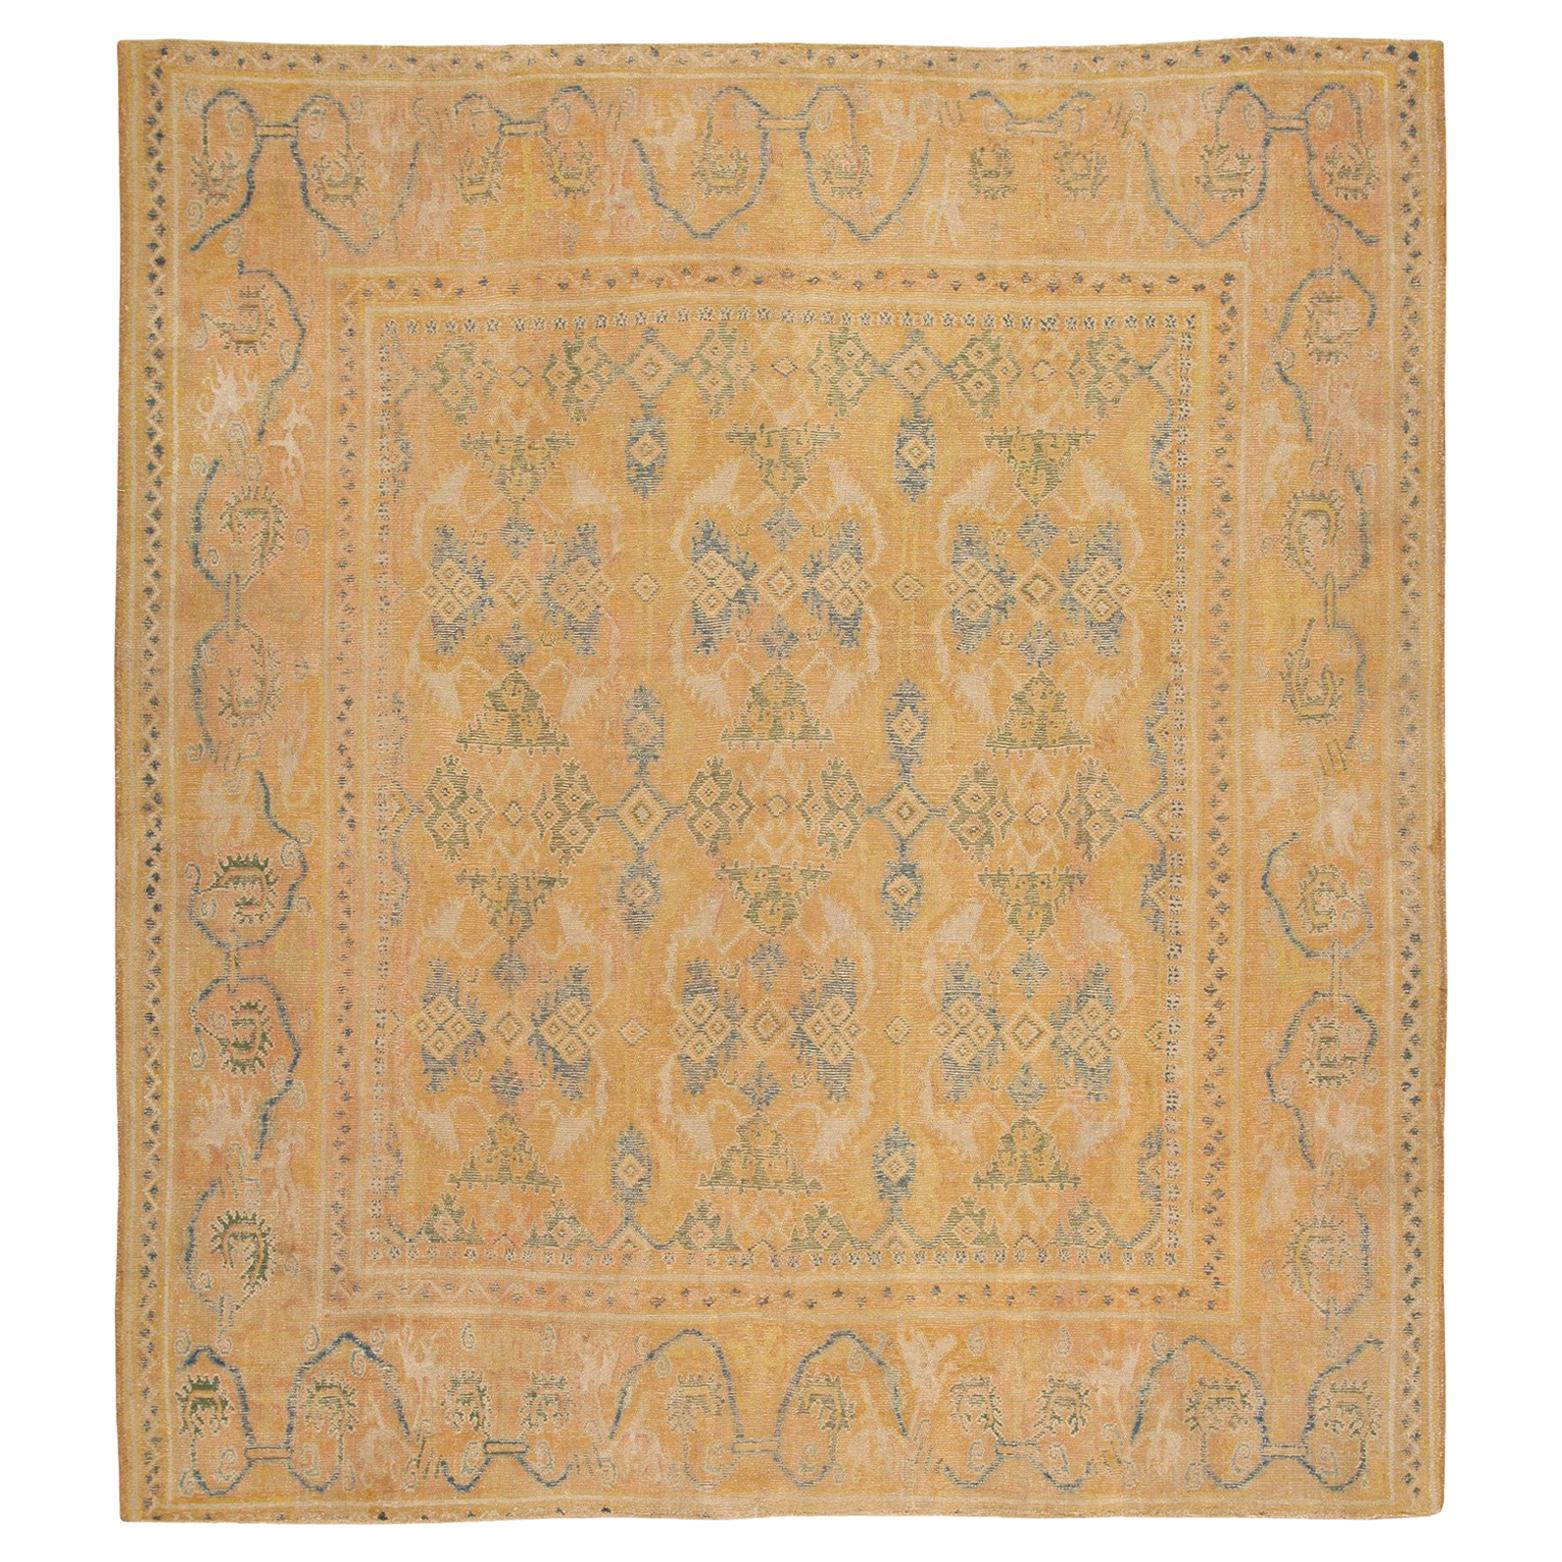 Antique 17th Century Spanish Cuenca Carpet. Size: 10' x 11' (3.05 m x 3.35 m)